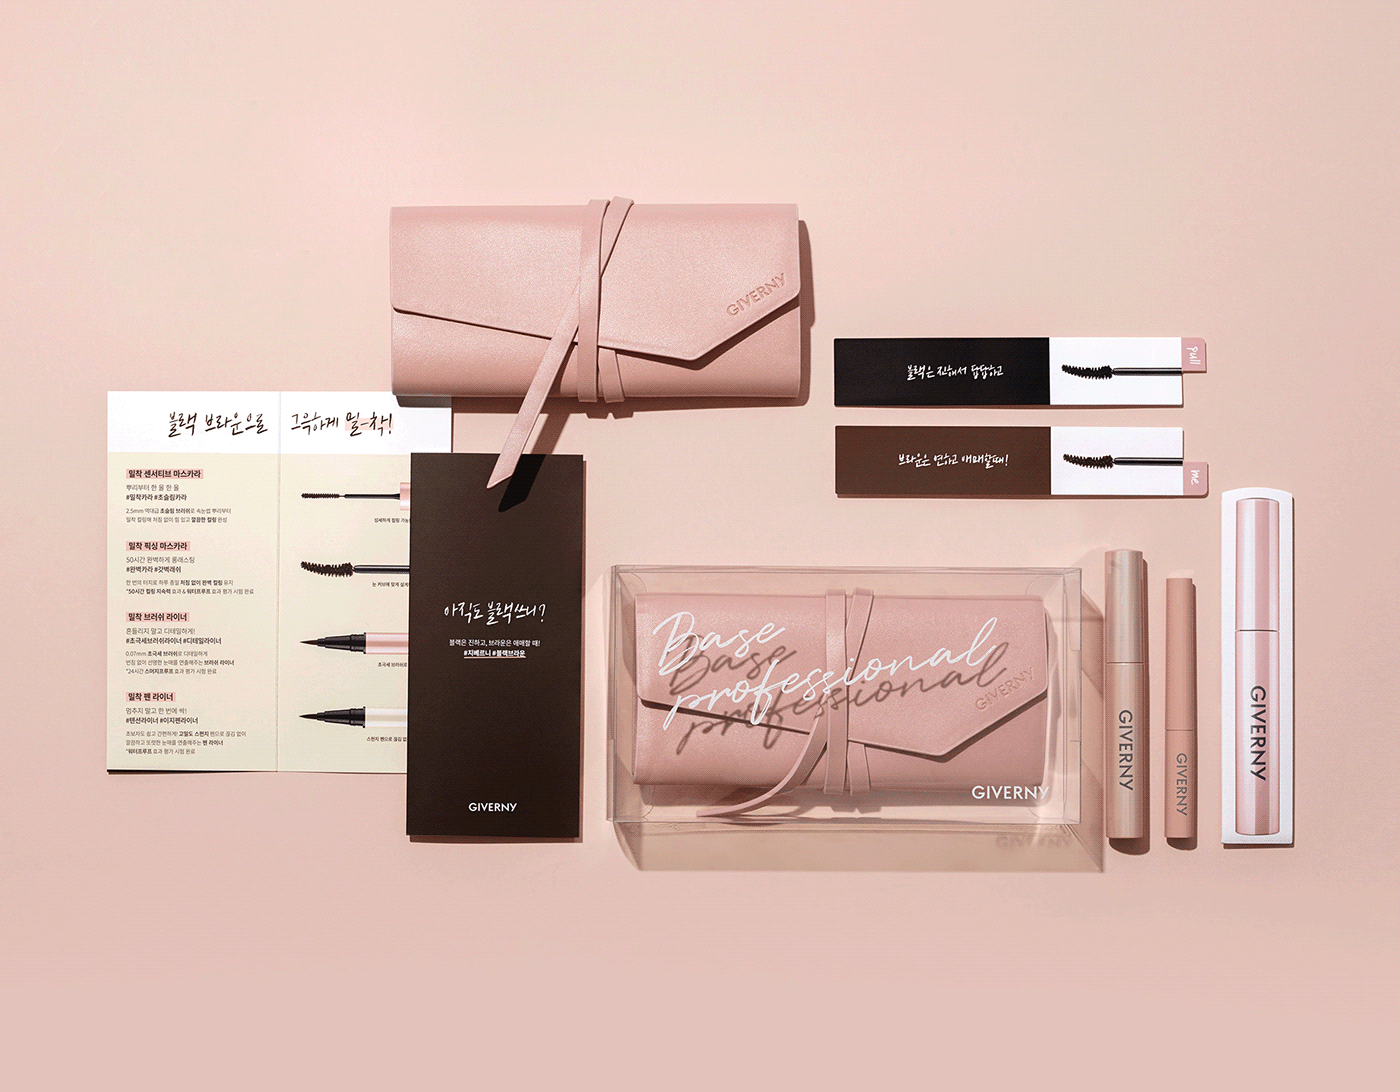 BEAUTY PACKAGE beautypackage branding  HEAZ INFLUENCERKIT packagedesign Packaging press kit cosmetics cosmetics packaging